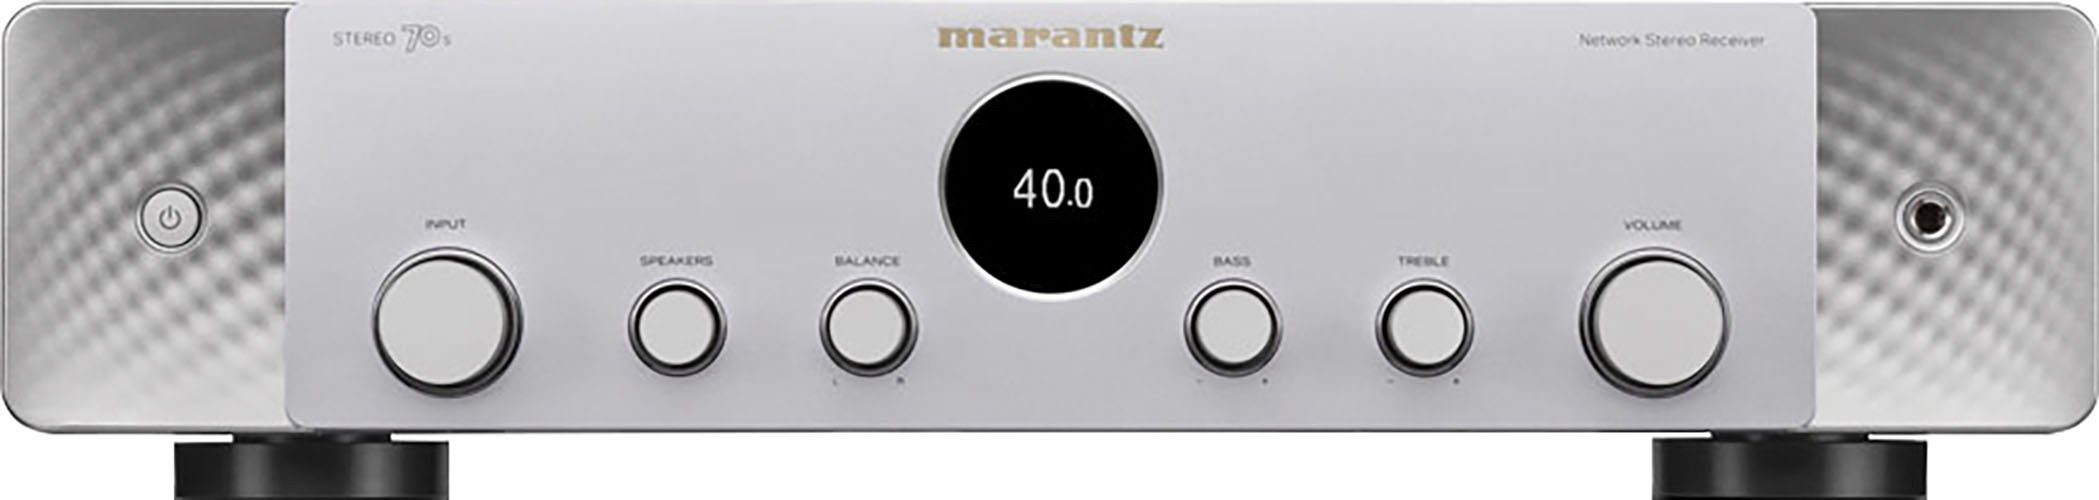 Marantz Stereo 70S Silber/Gold (Ethernet), AV-Receiver WLAN) 2.1 LAN (Bluetooth